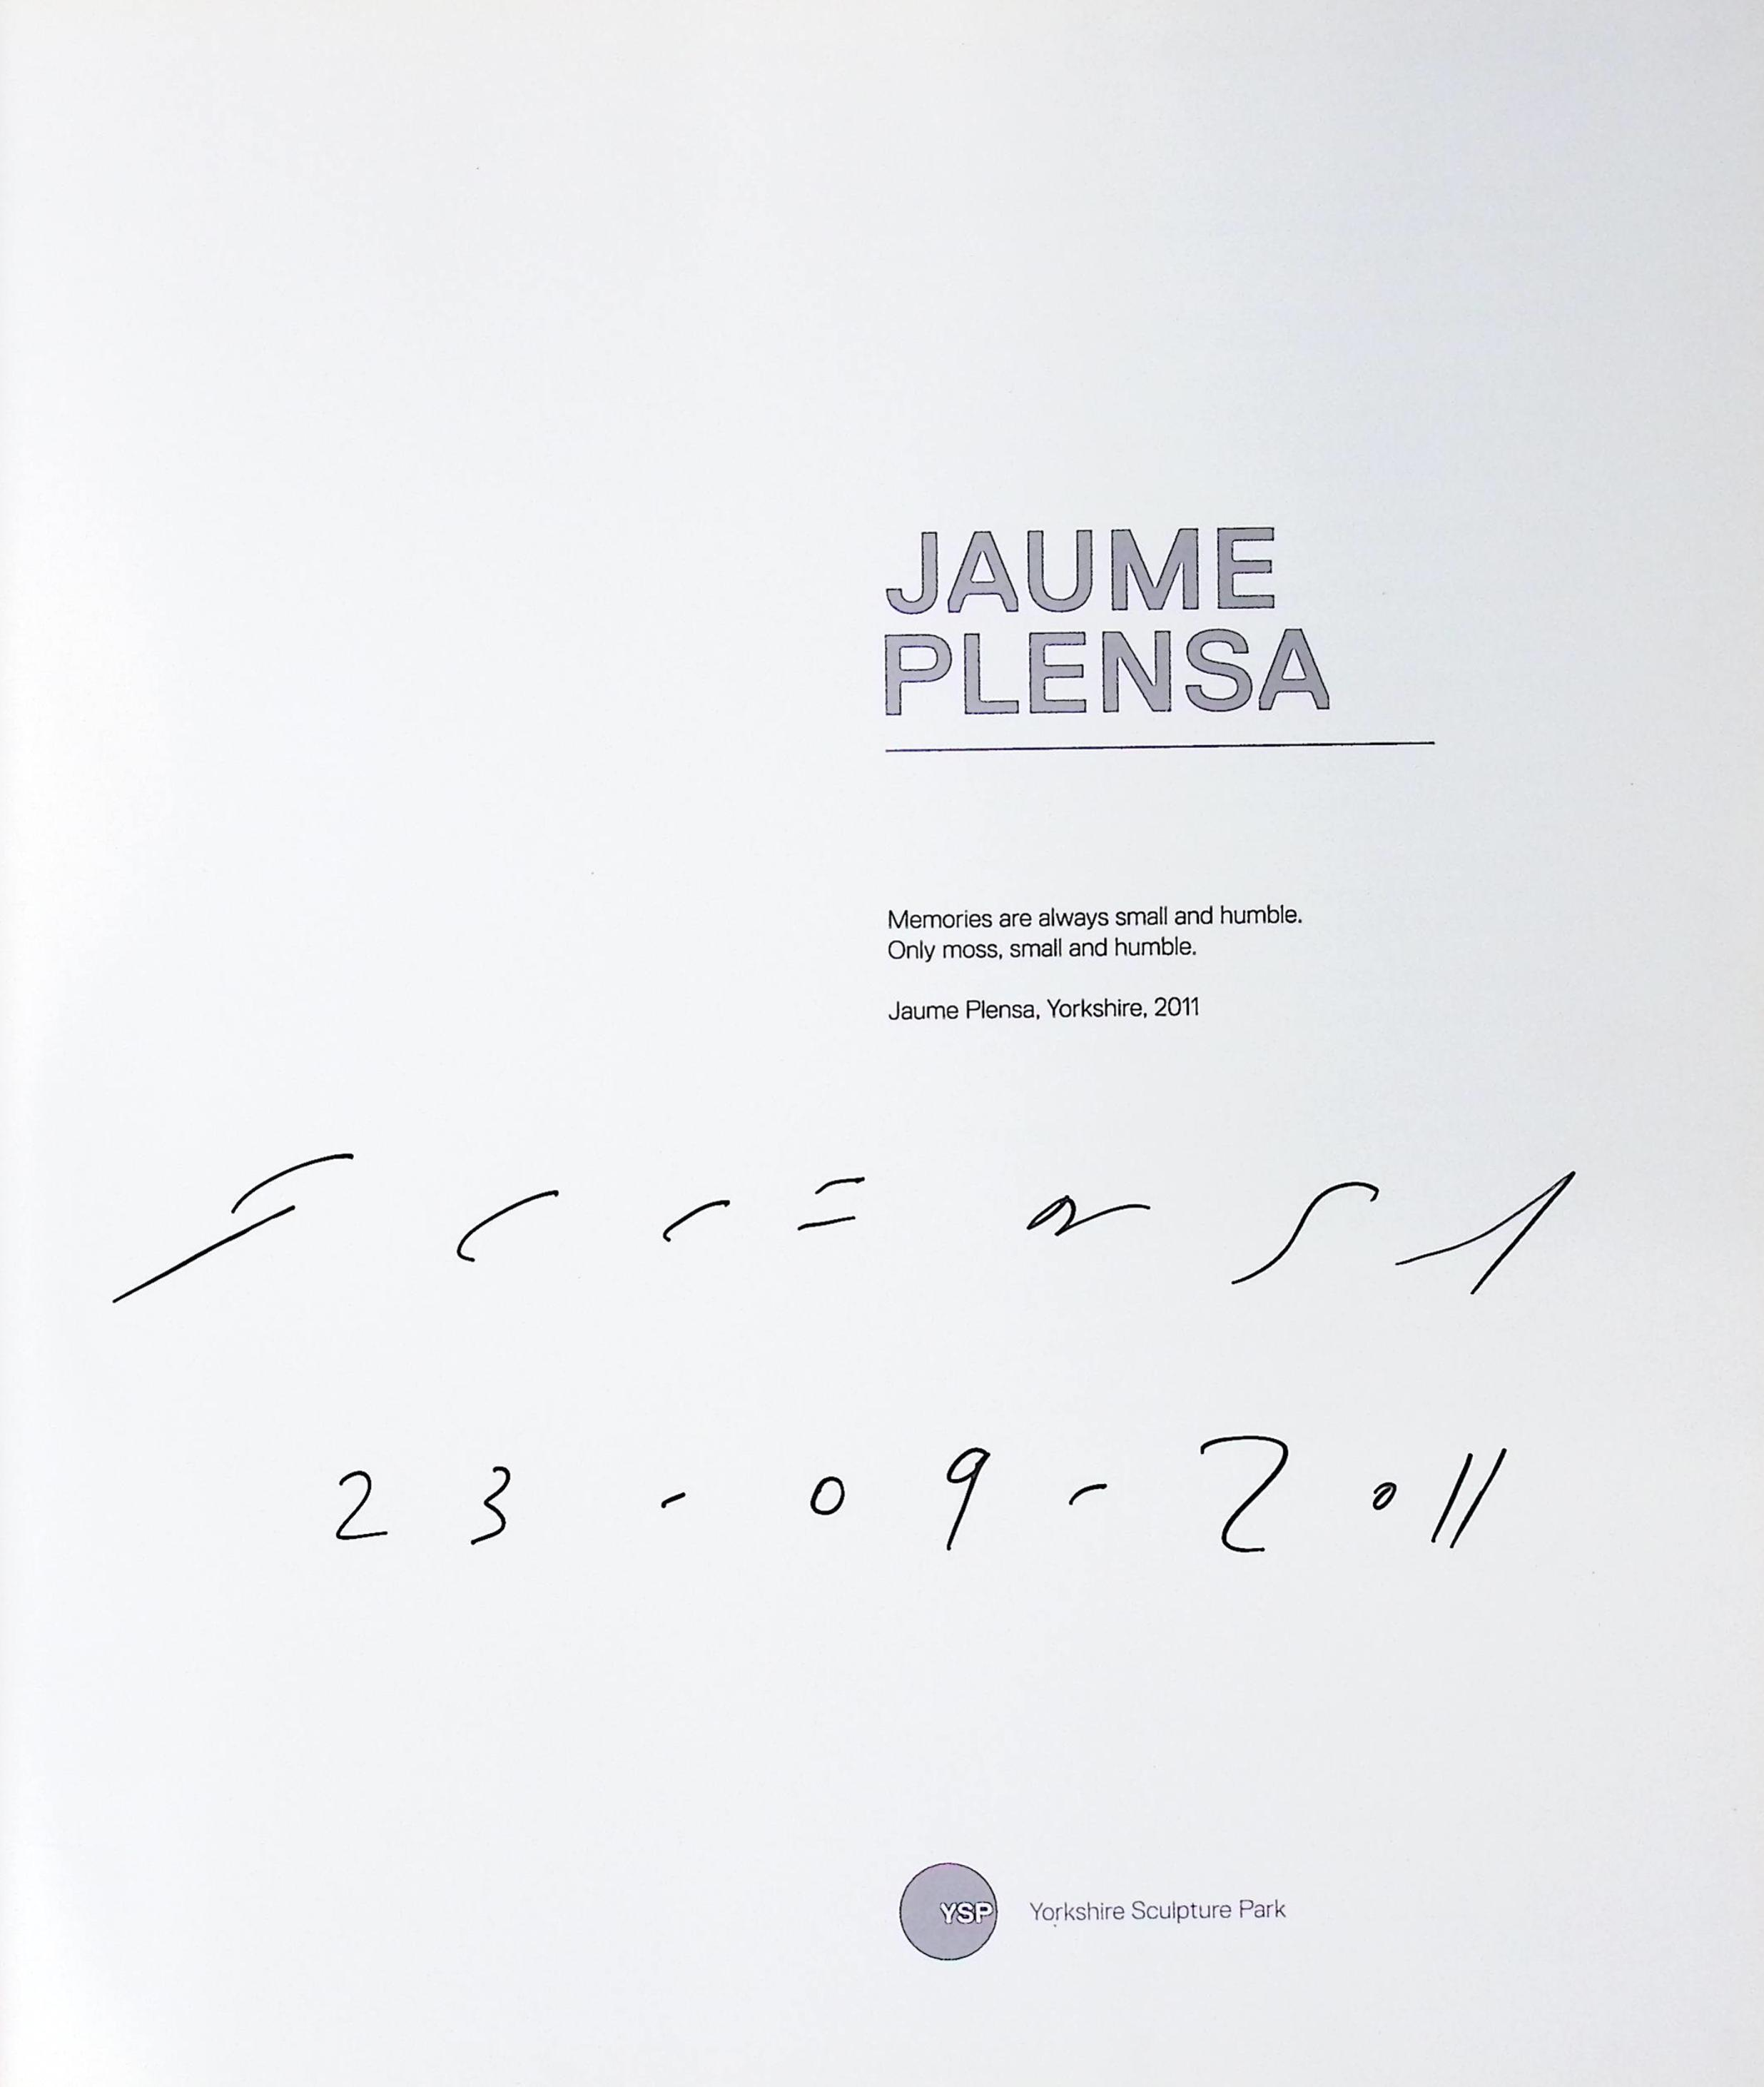 Jaume Plensa. Yorkshire Sculpture Park. Signed copy.